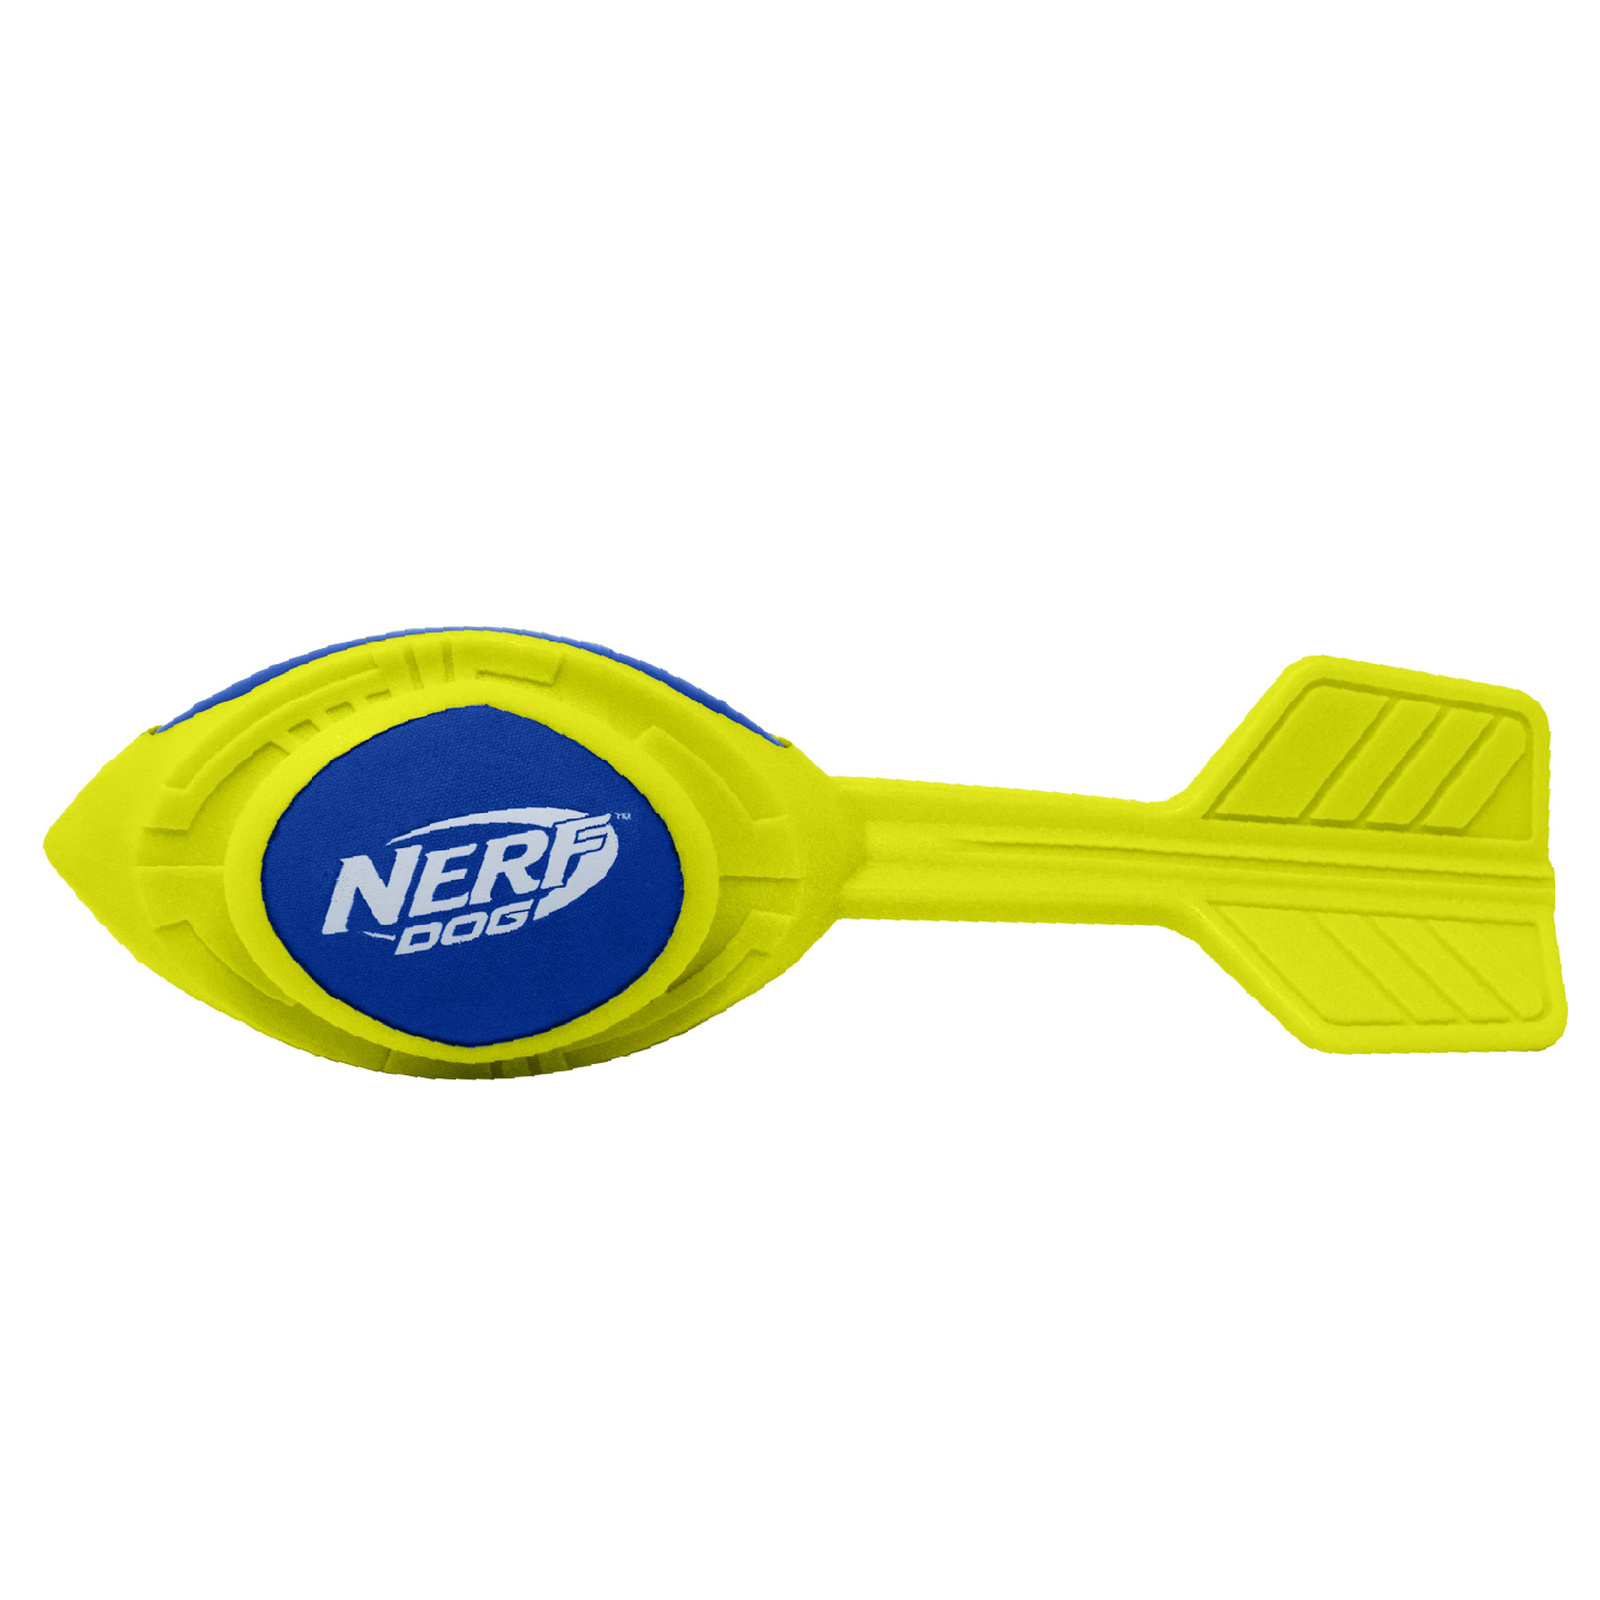 Nerf Nerf игрушка из вспененной резины 30 см (серия Мегатон) (290 г) nerf nerf мяч для регби из вспененной резины и нейлона 18 см серия мегатон синий оранжевый 263 г